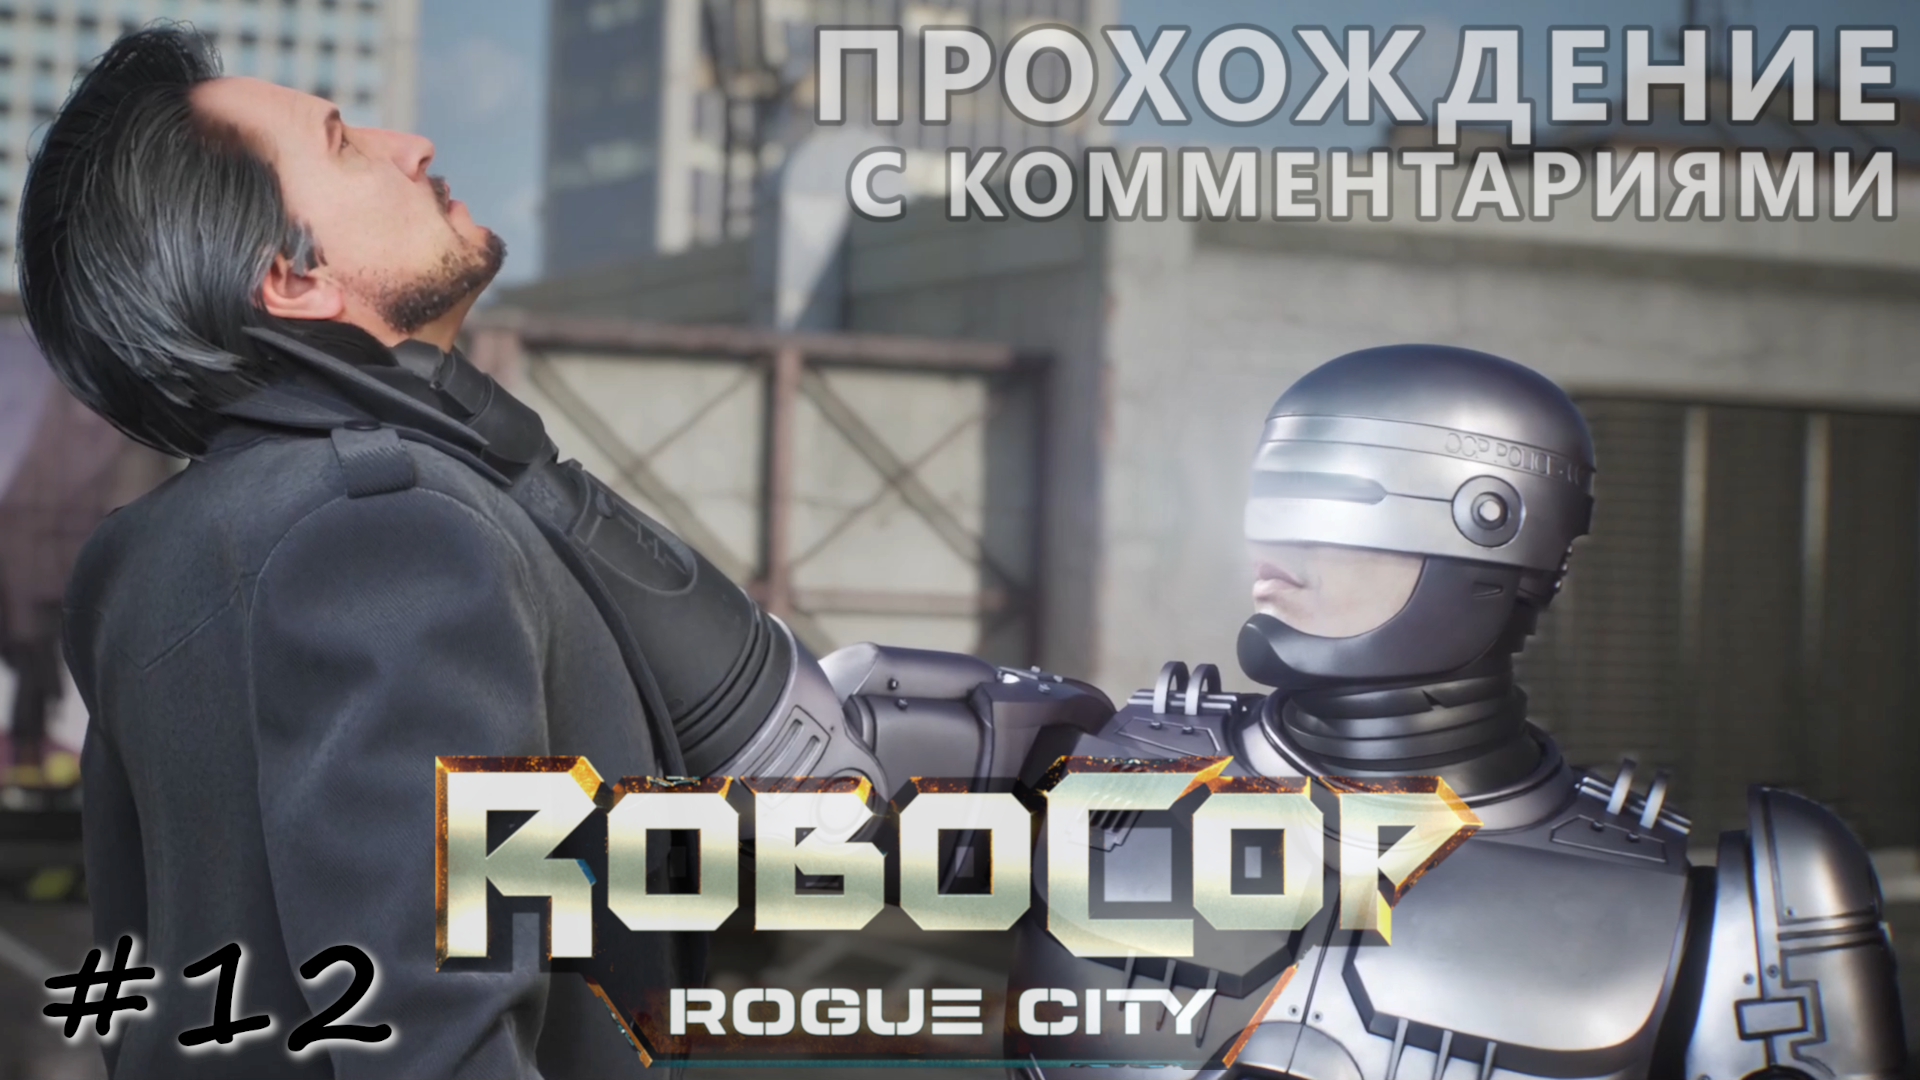 Главный злодей арестован, но это не конец - #12 - RoboCop Rogue City